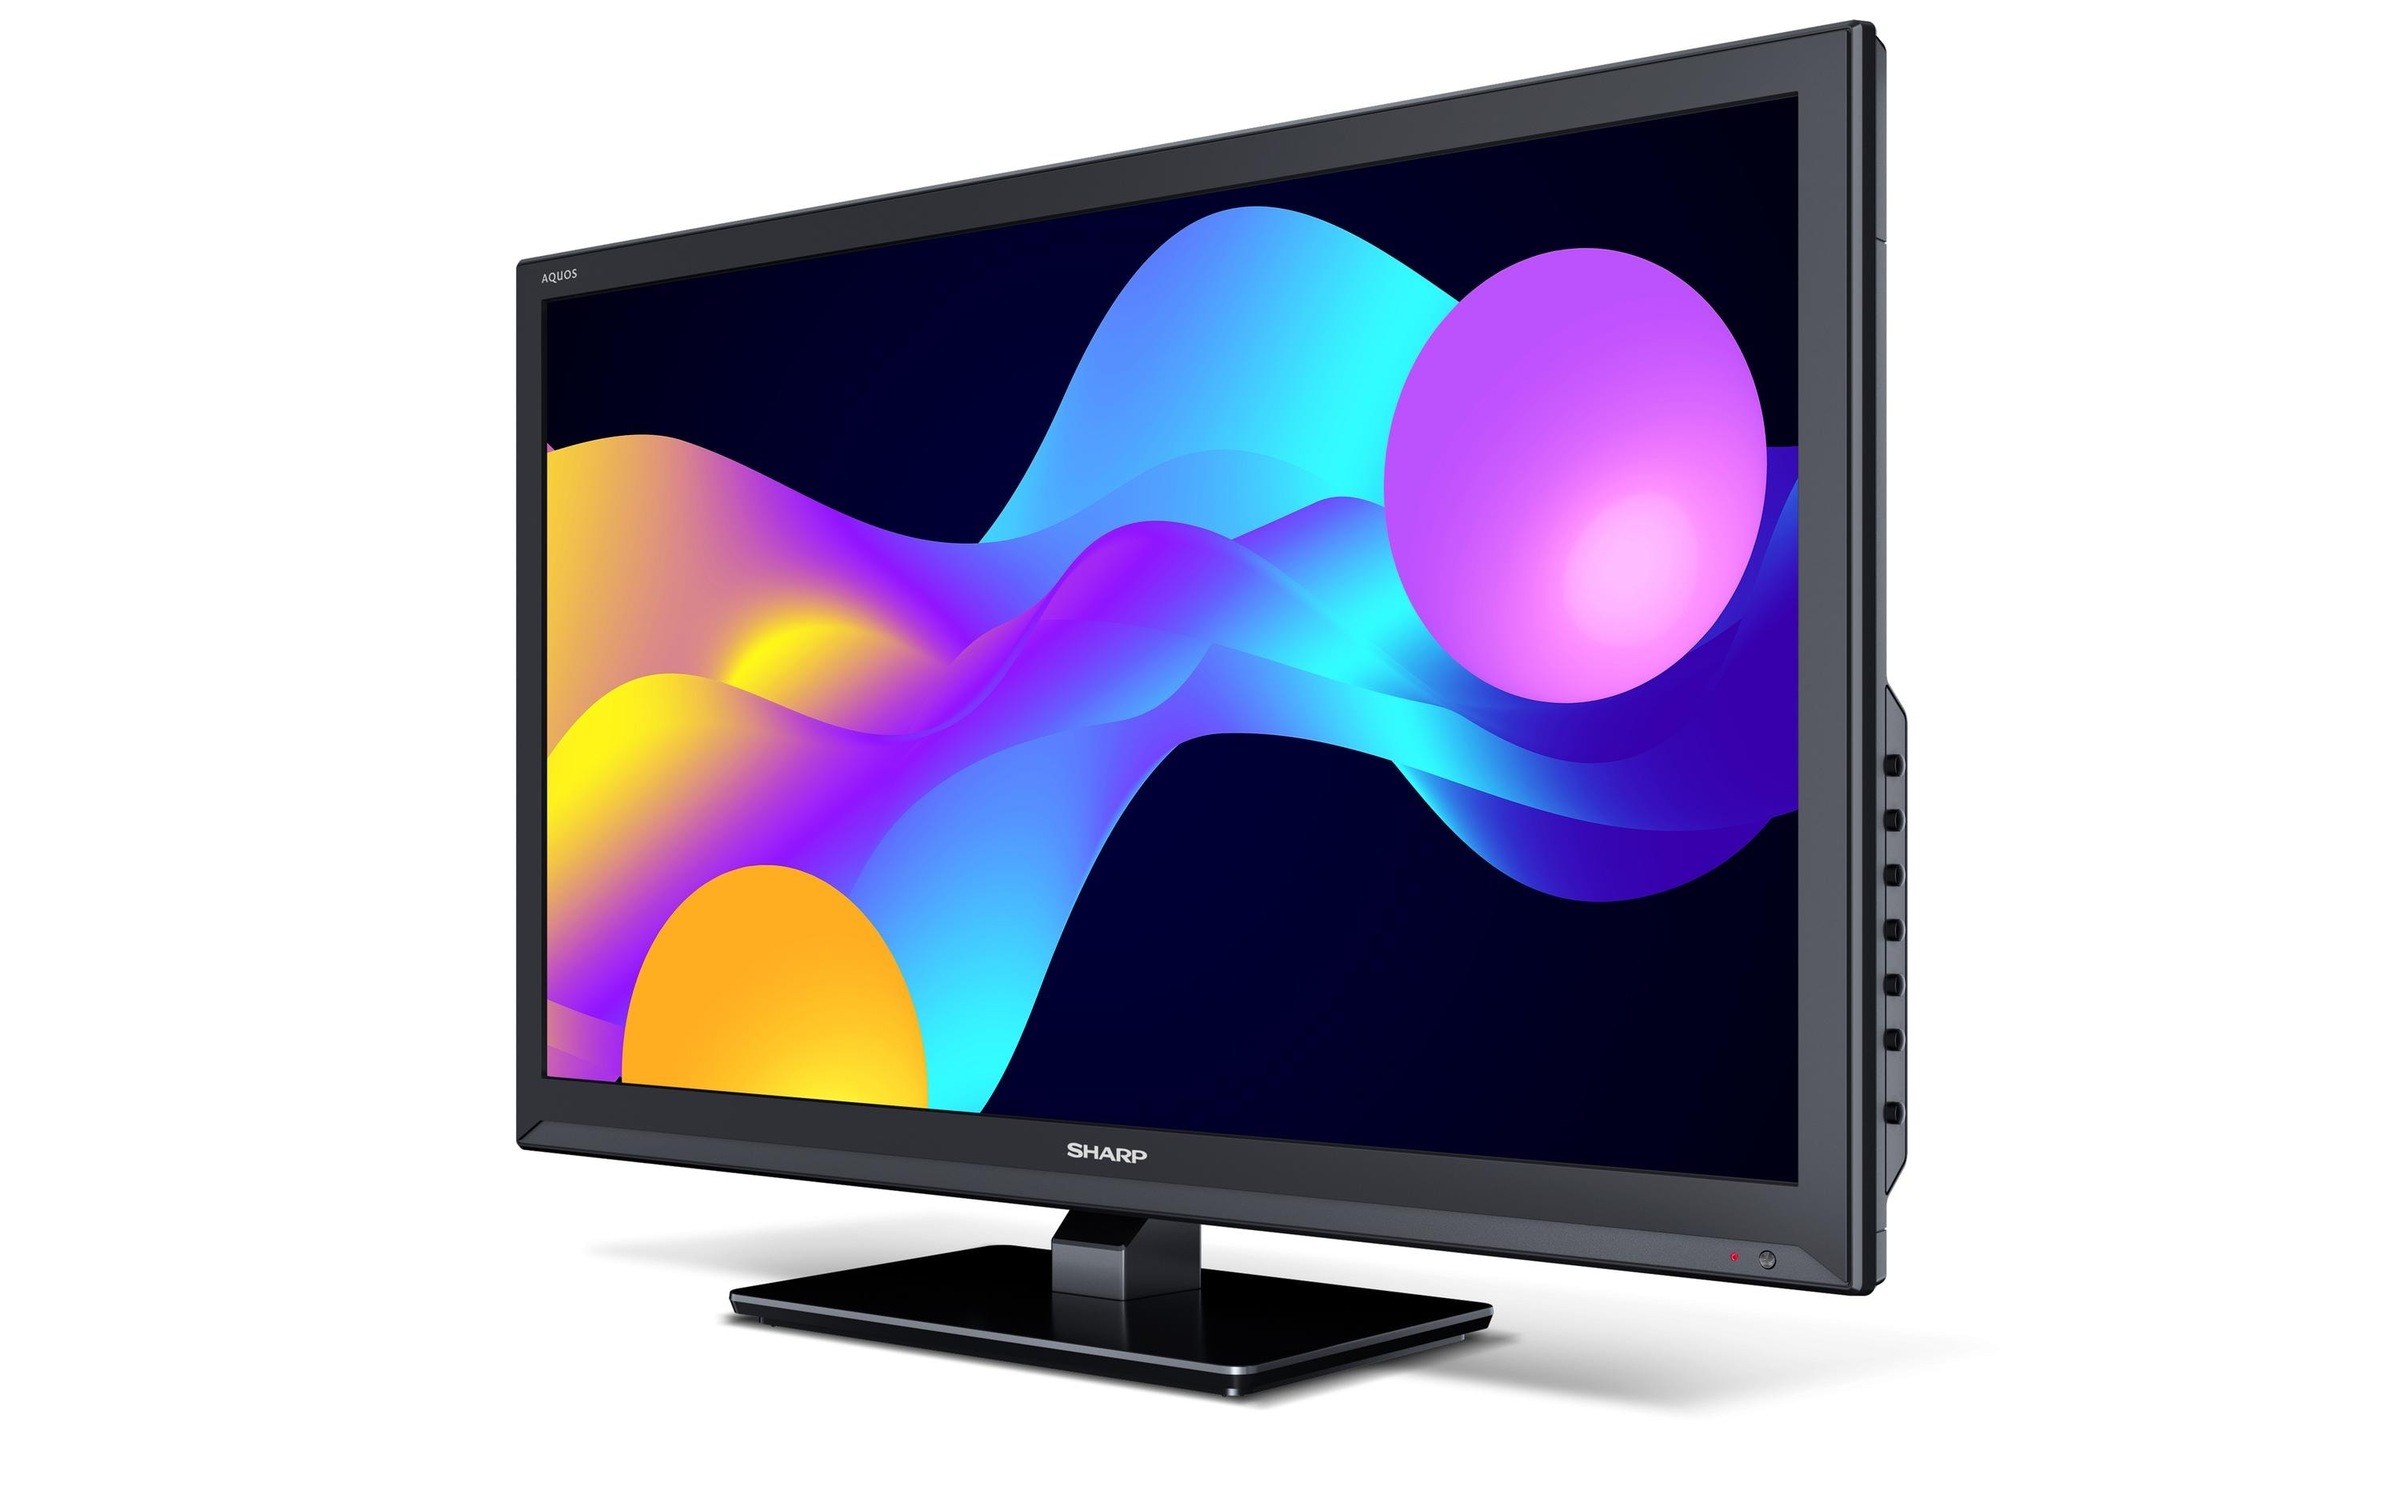 Sharp LCD-LED Fernseher »24EE3E, 24 LED-TV«, 61 cm/24 Zoll